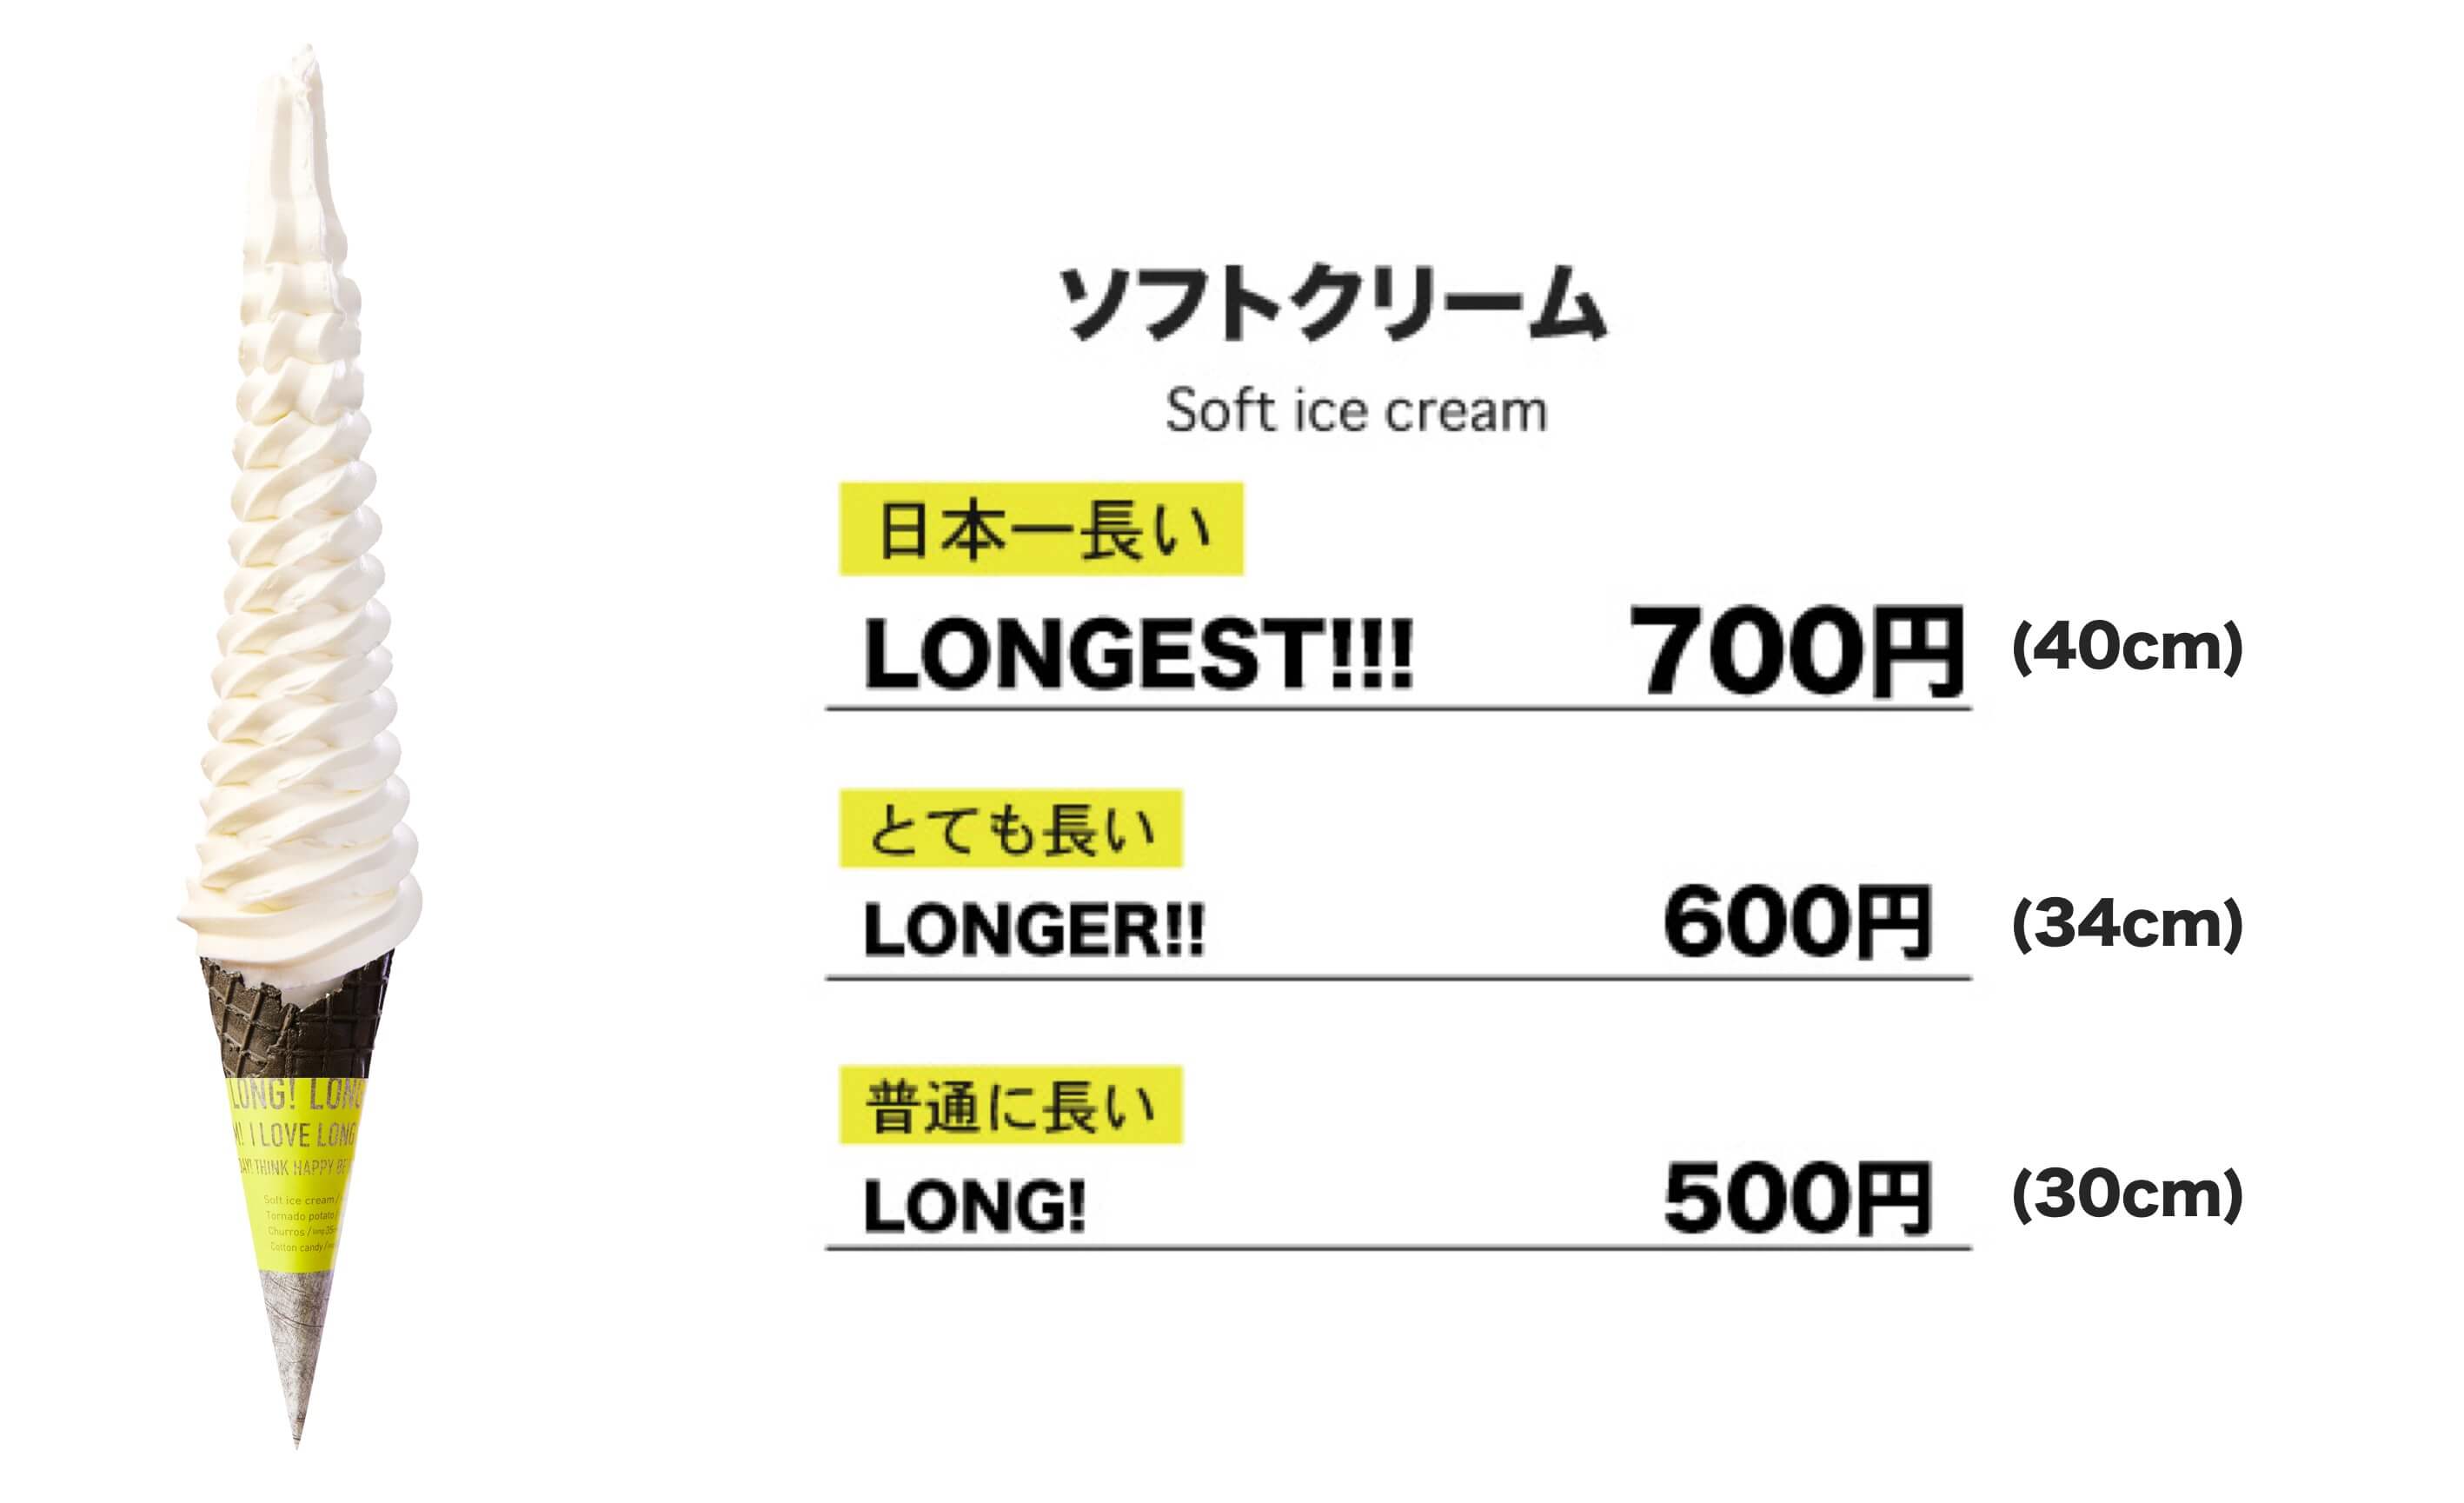 LONG! LONGER!! LONGEST!!!